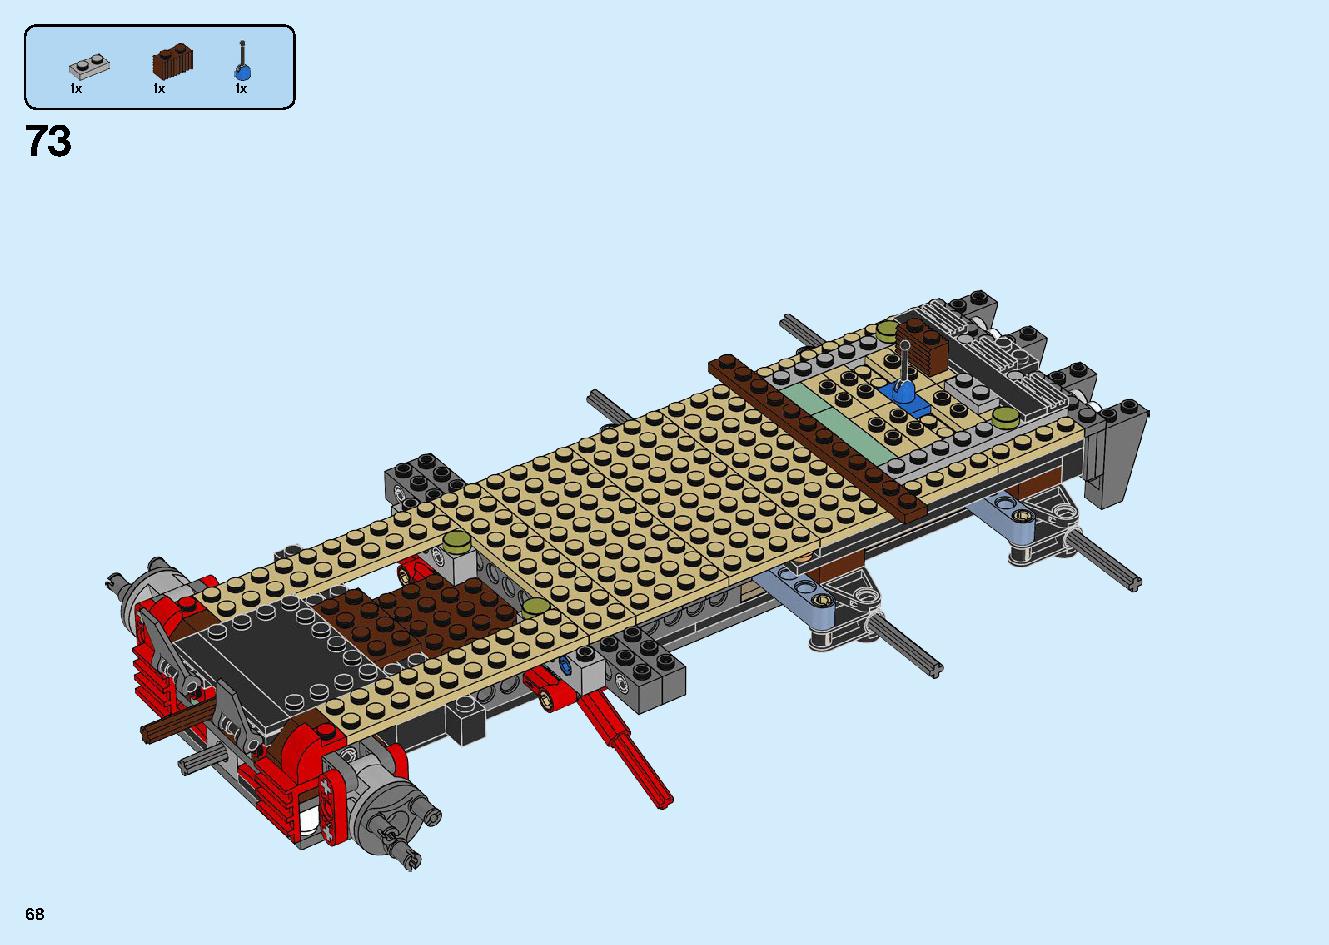 陸上戦艦バウンティ号 70677 レゴの商品情報 レゴの説明書・組立方法 68 page